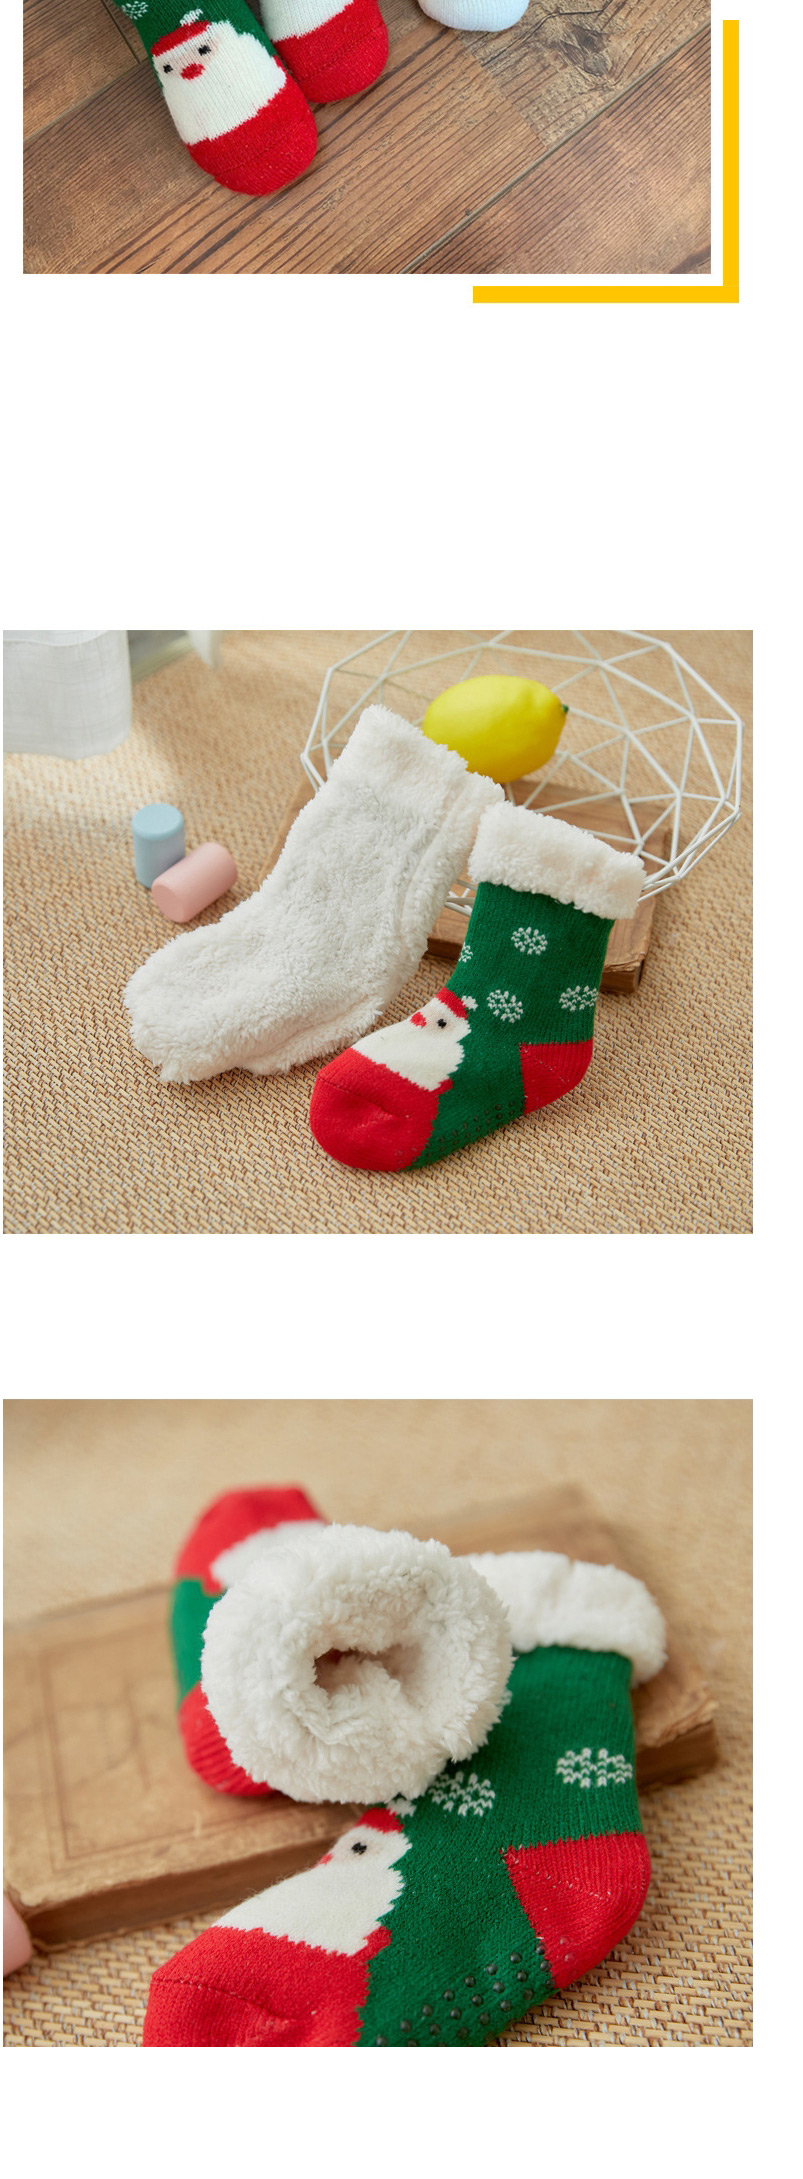 Fashion Khaki Clouds Christmas Thick Printed Baby Non-slip Floor Socks,Fashion Socks